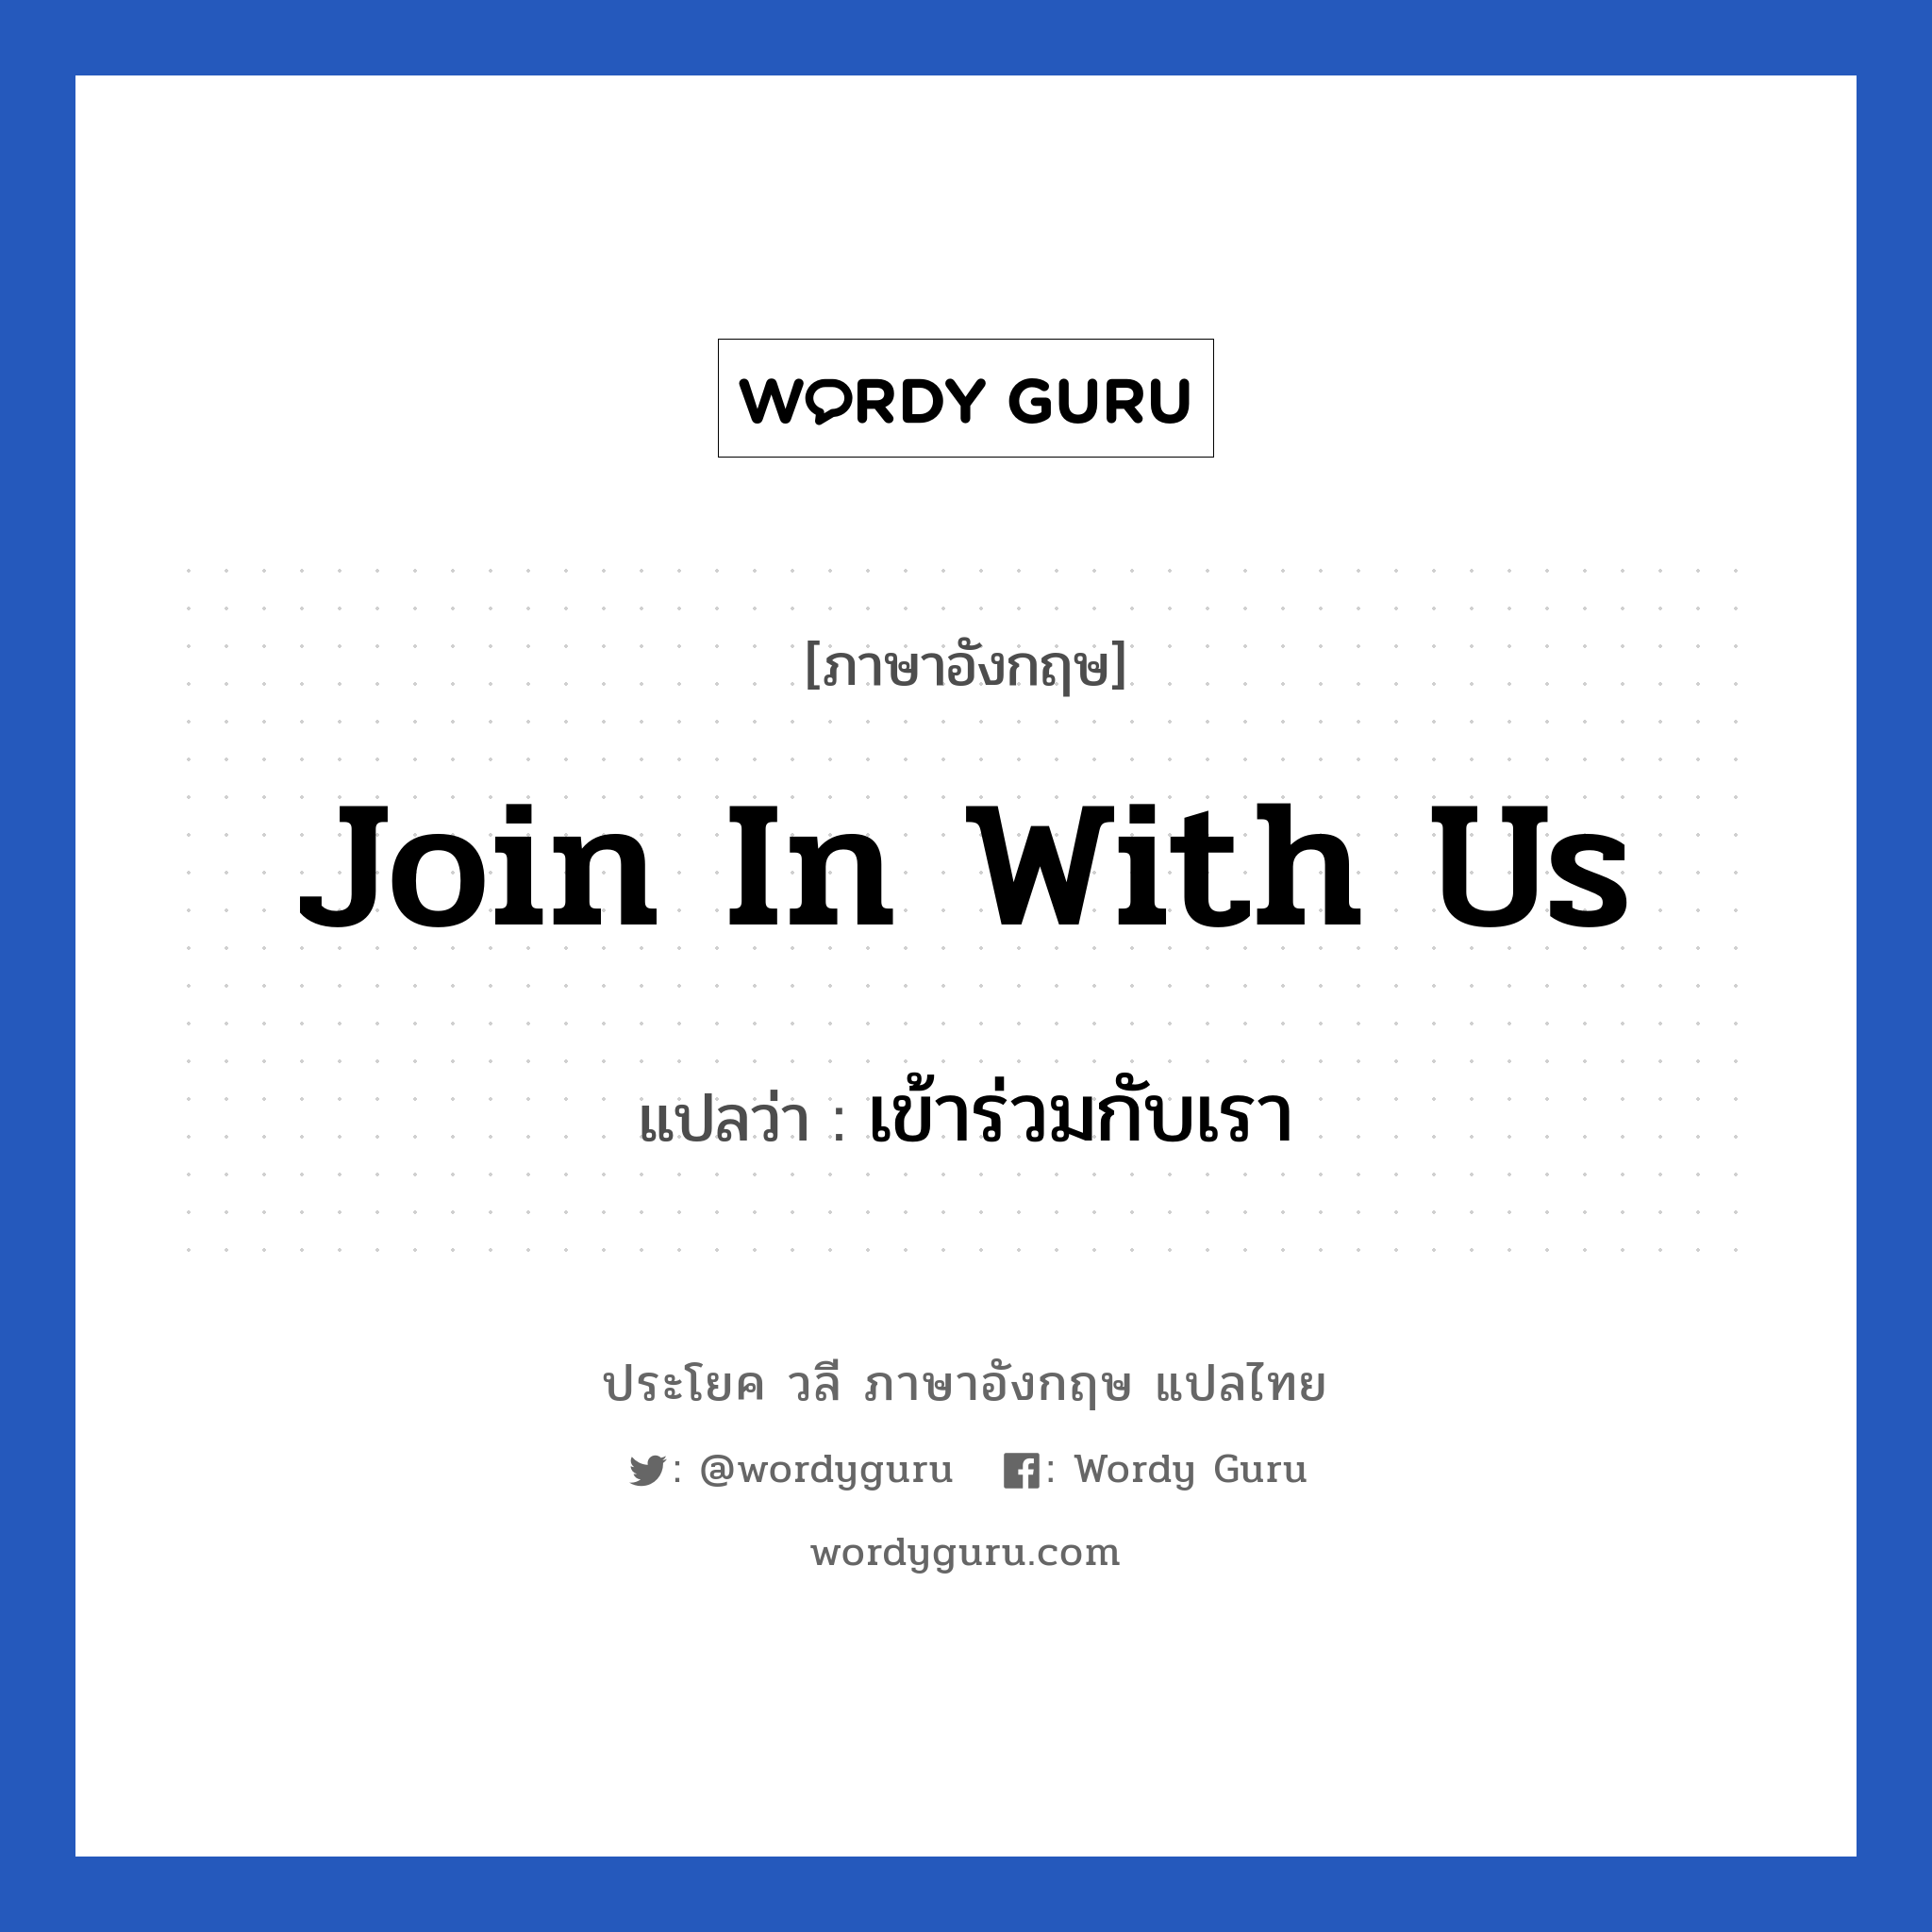 Join in with us แปลว่า?, วลีภาษาอังกฤษ Join in with us แปลว่า เข้าร่วมกับเรา